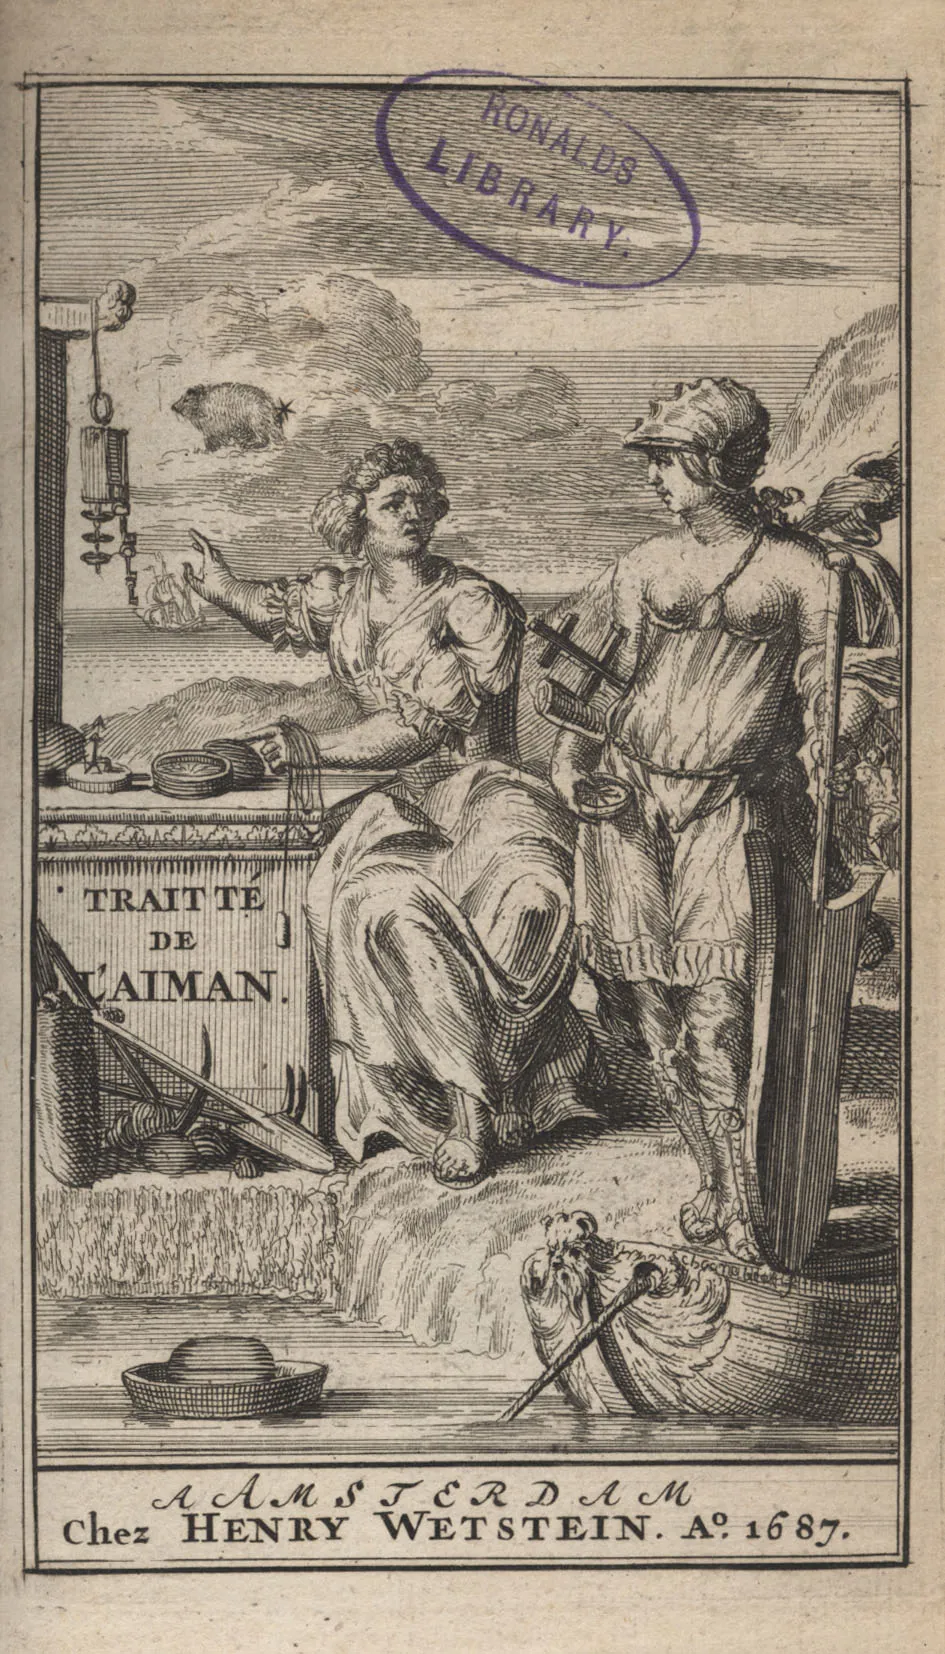 D’Alencé, Traitté de l’Aiman (1687) from the Ronalds Library collection ref. R/RB/8VO/016